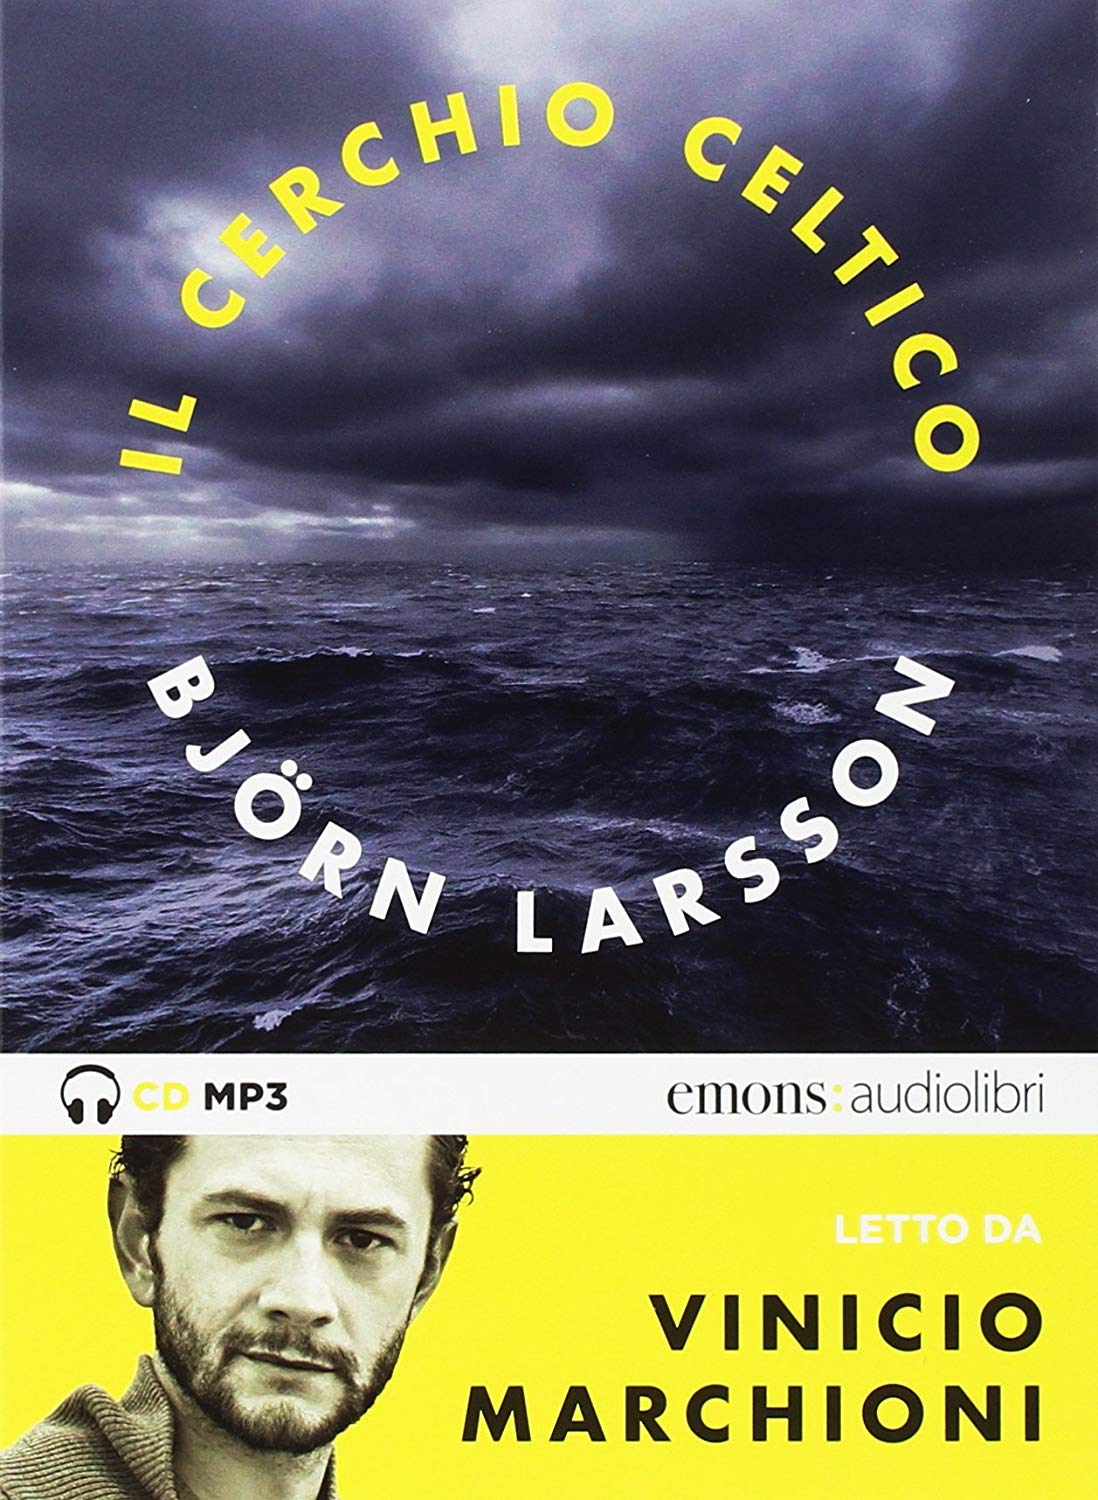 Audiolibro Björn Larsson - Il Cerchio Celtico Letto Da Vinicio Marchioni. Audiolibro. 2 CD Audio Formato MP3 NUOVO SIGILLATO, EDIZIONE DEL 26/07/2018 SUBITO DISPONIBILE